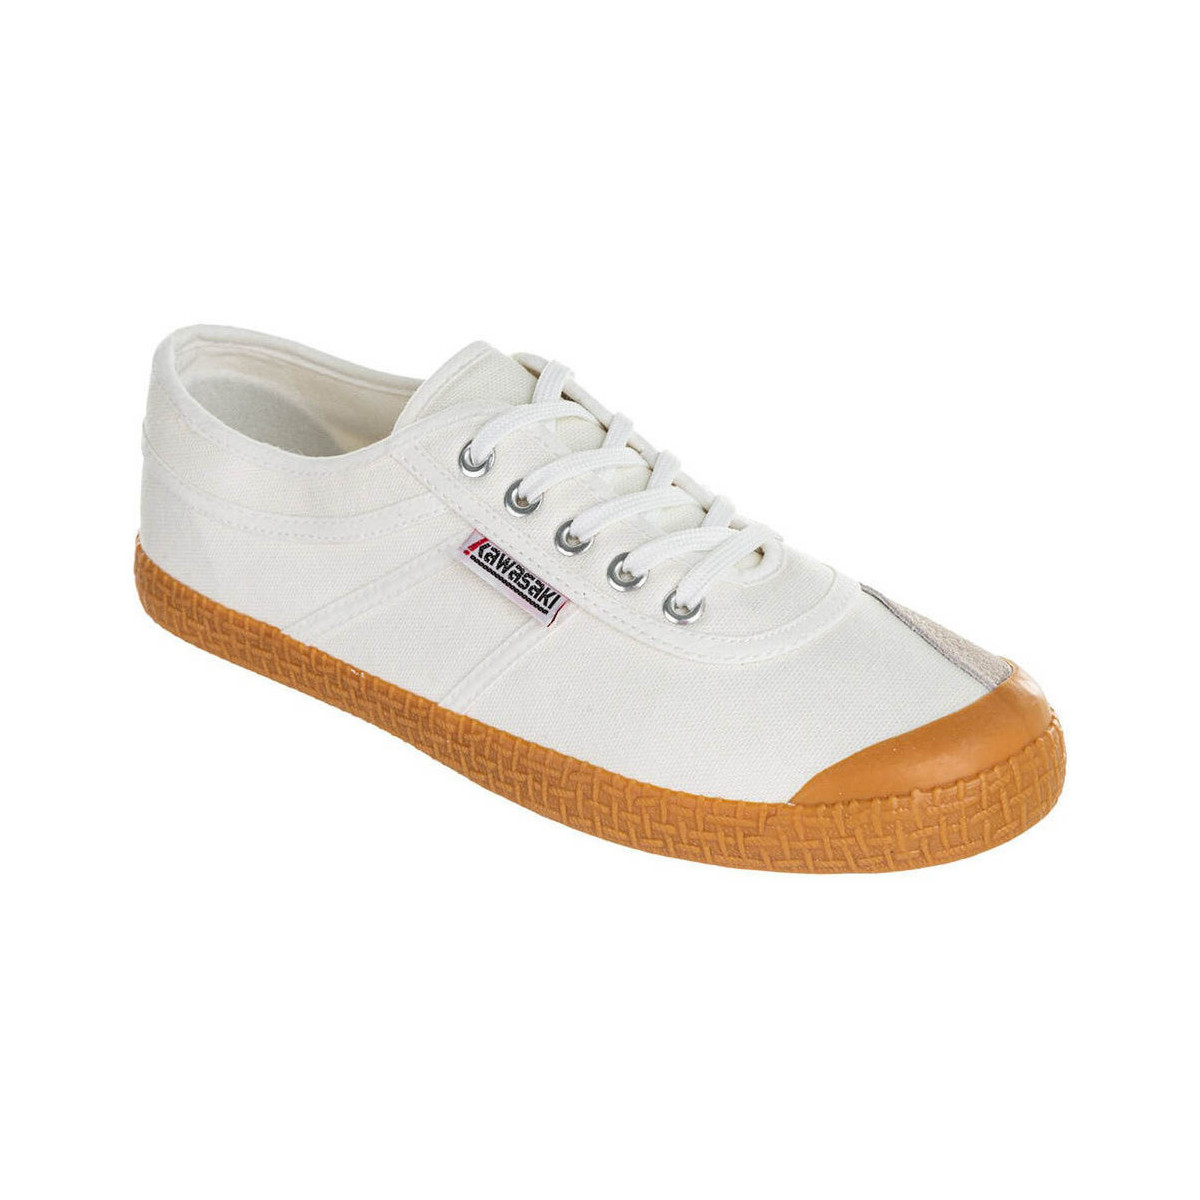 Zapatos Hombre Deportivas Moda Kawasaki Original Pure Shoe K212441 1002 White Blanco